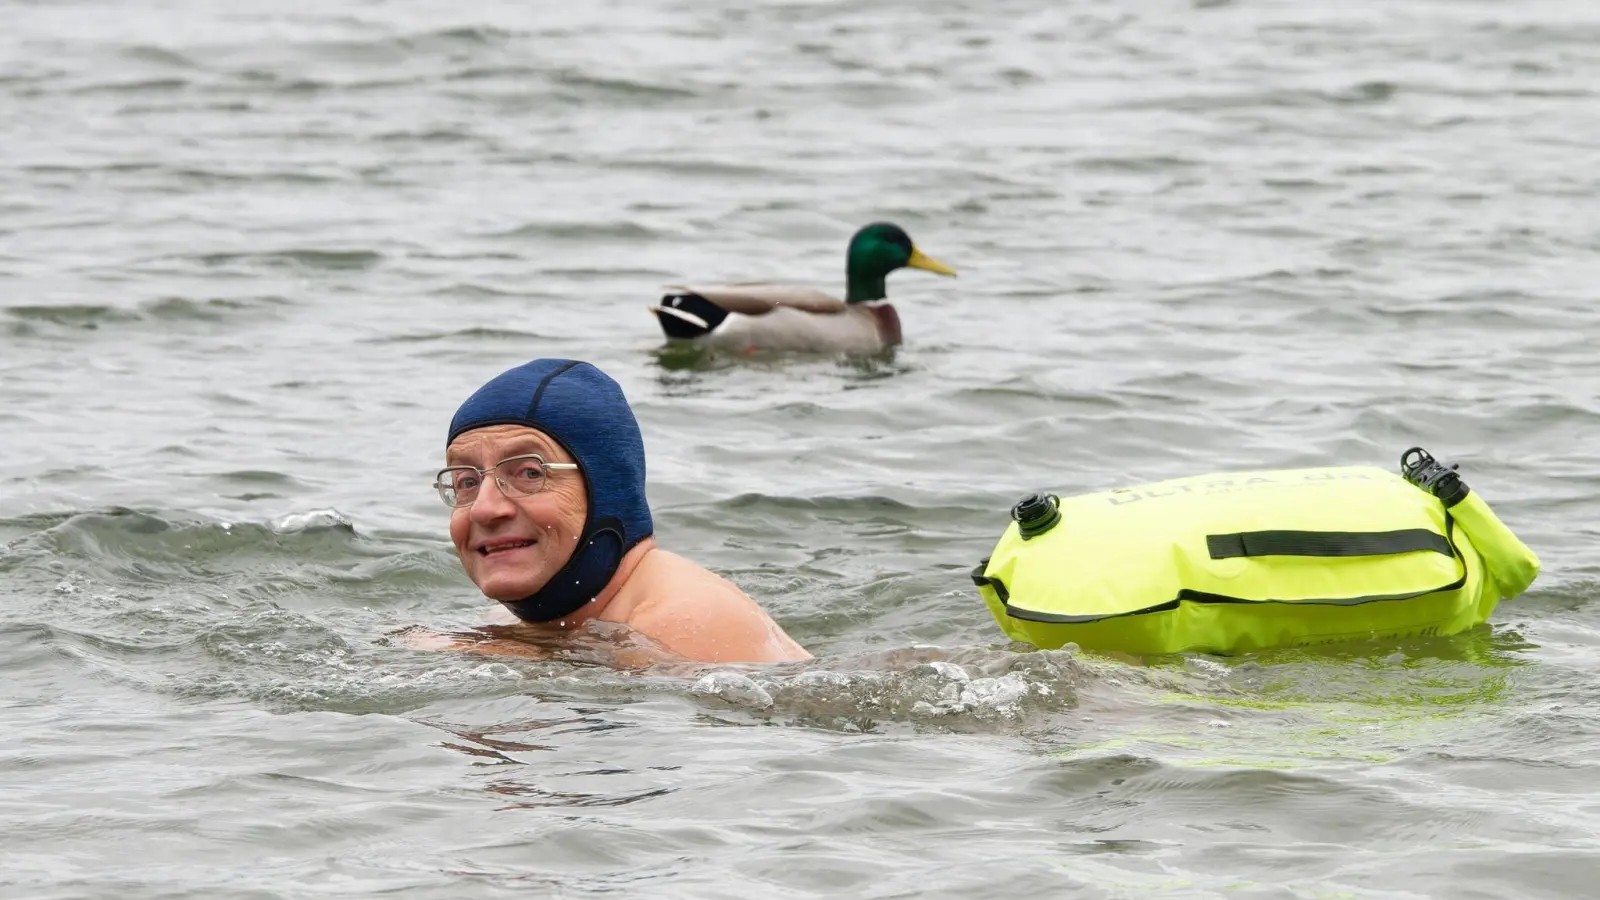 Comedian Wigald Boning schwimmt neben einer Ente in einem See. (Foto: Henning Kaiser/dpa/Archivbild)